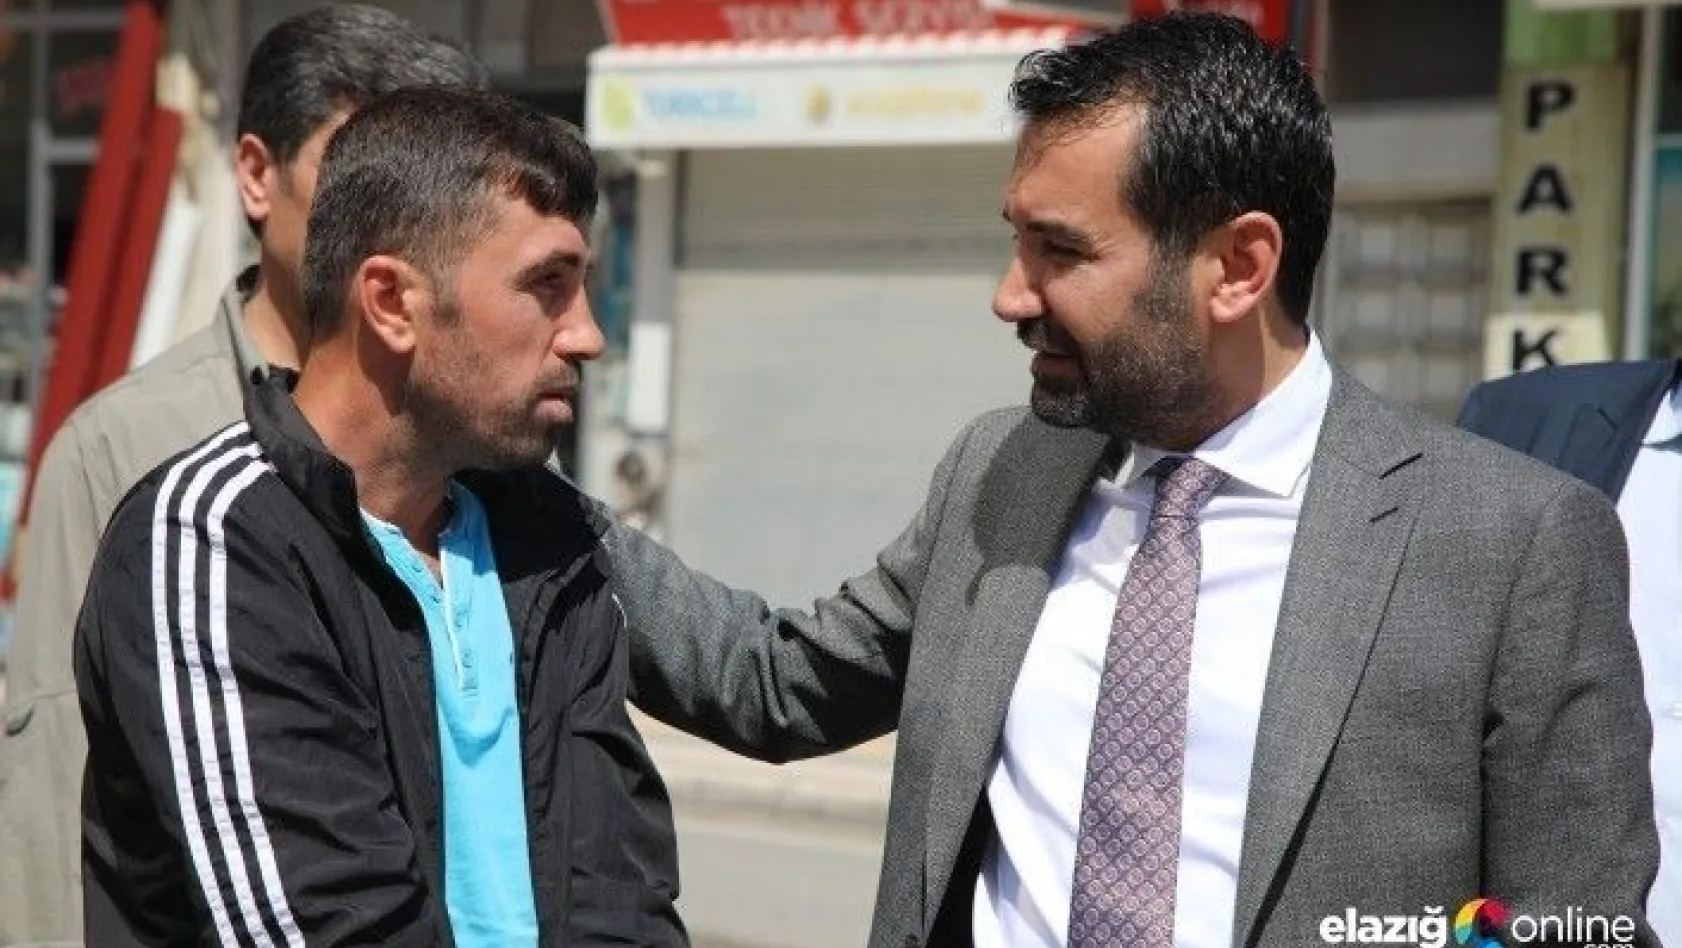 Elazığ Belediyesi'nden seyyar satıcıya darp iddiasına yanıt!